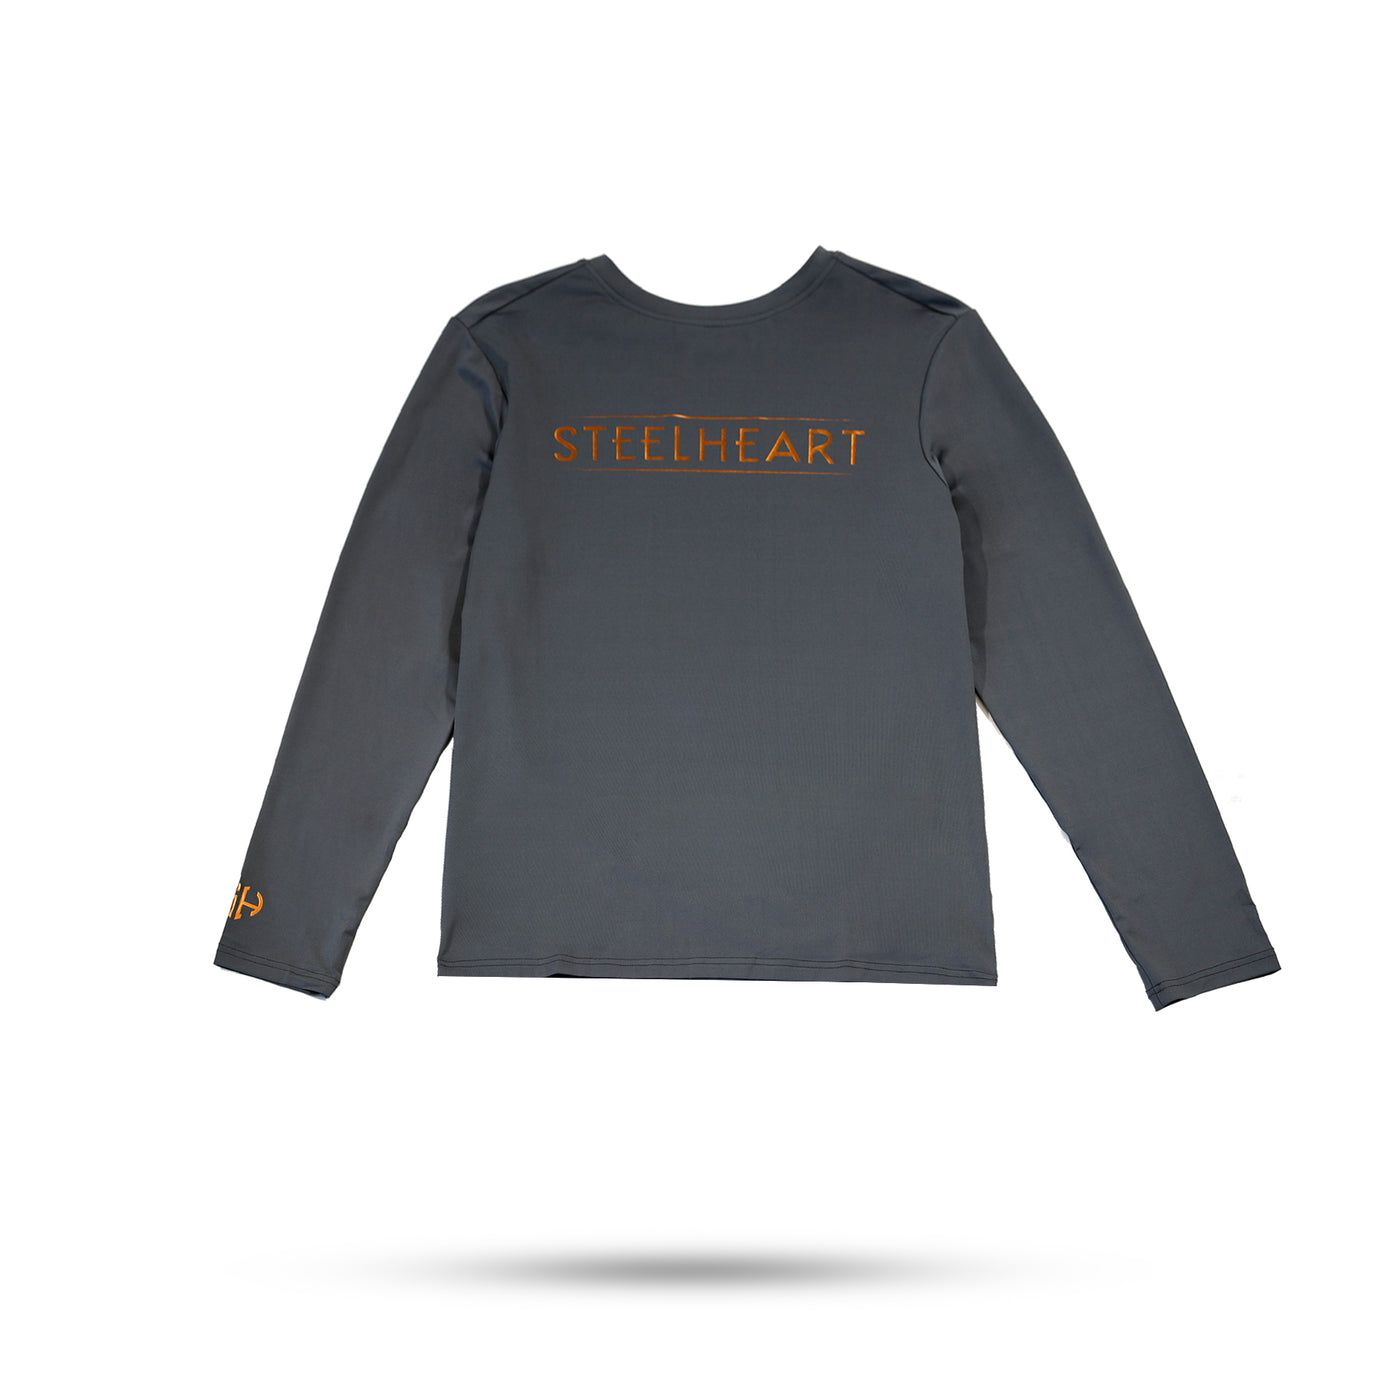 SteelHeart Signature Workout Shirt - Grey